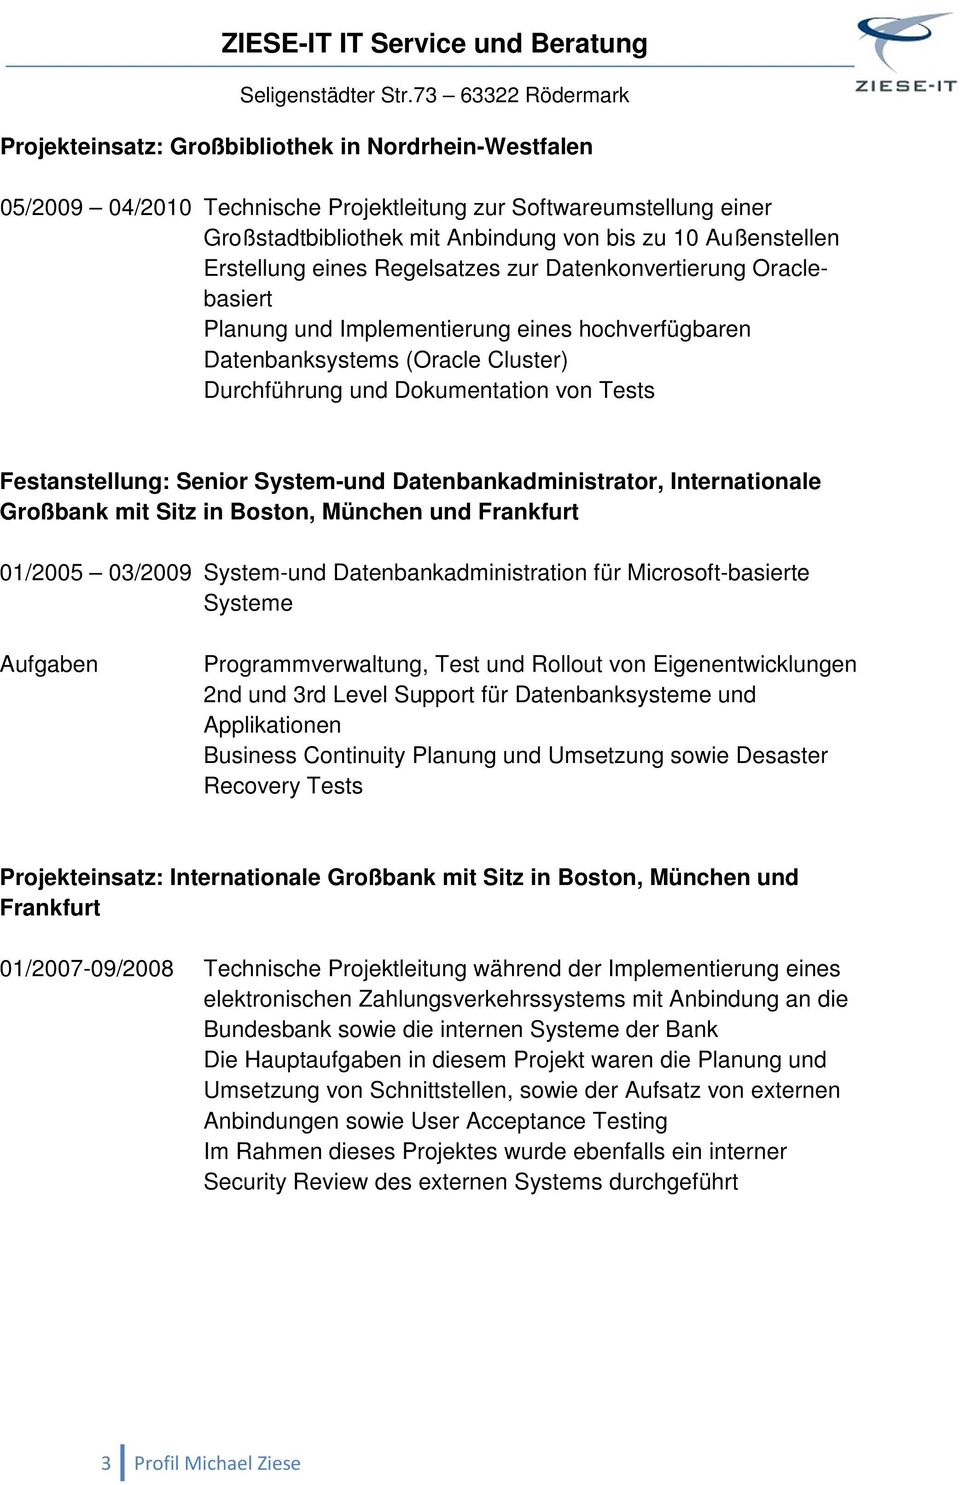 Senior System-und Datenbankadministrator, Internationale Großbank mit Sitz in Boston, München und Frankfurt 01/2005 03/2009 System-und Datenbankadministration für Microsoft-basierte Systeme